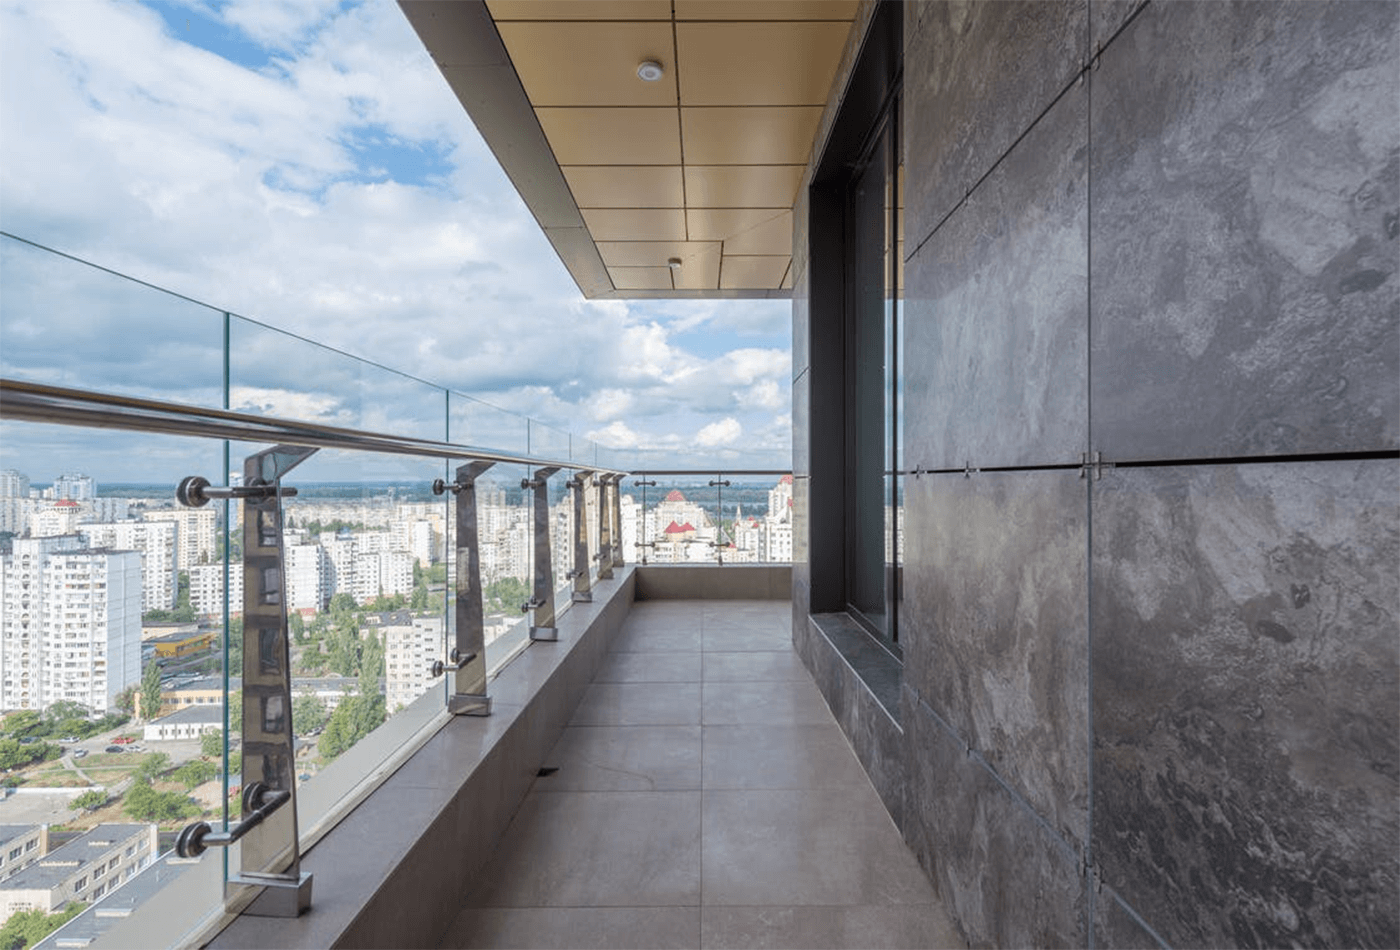 Balcony Flooring - Stones & Tiles Make It Waterproof!